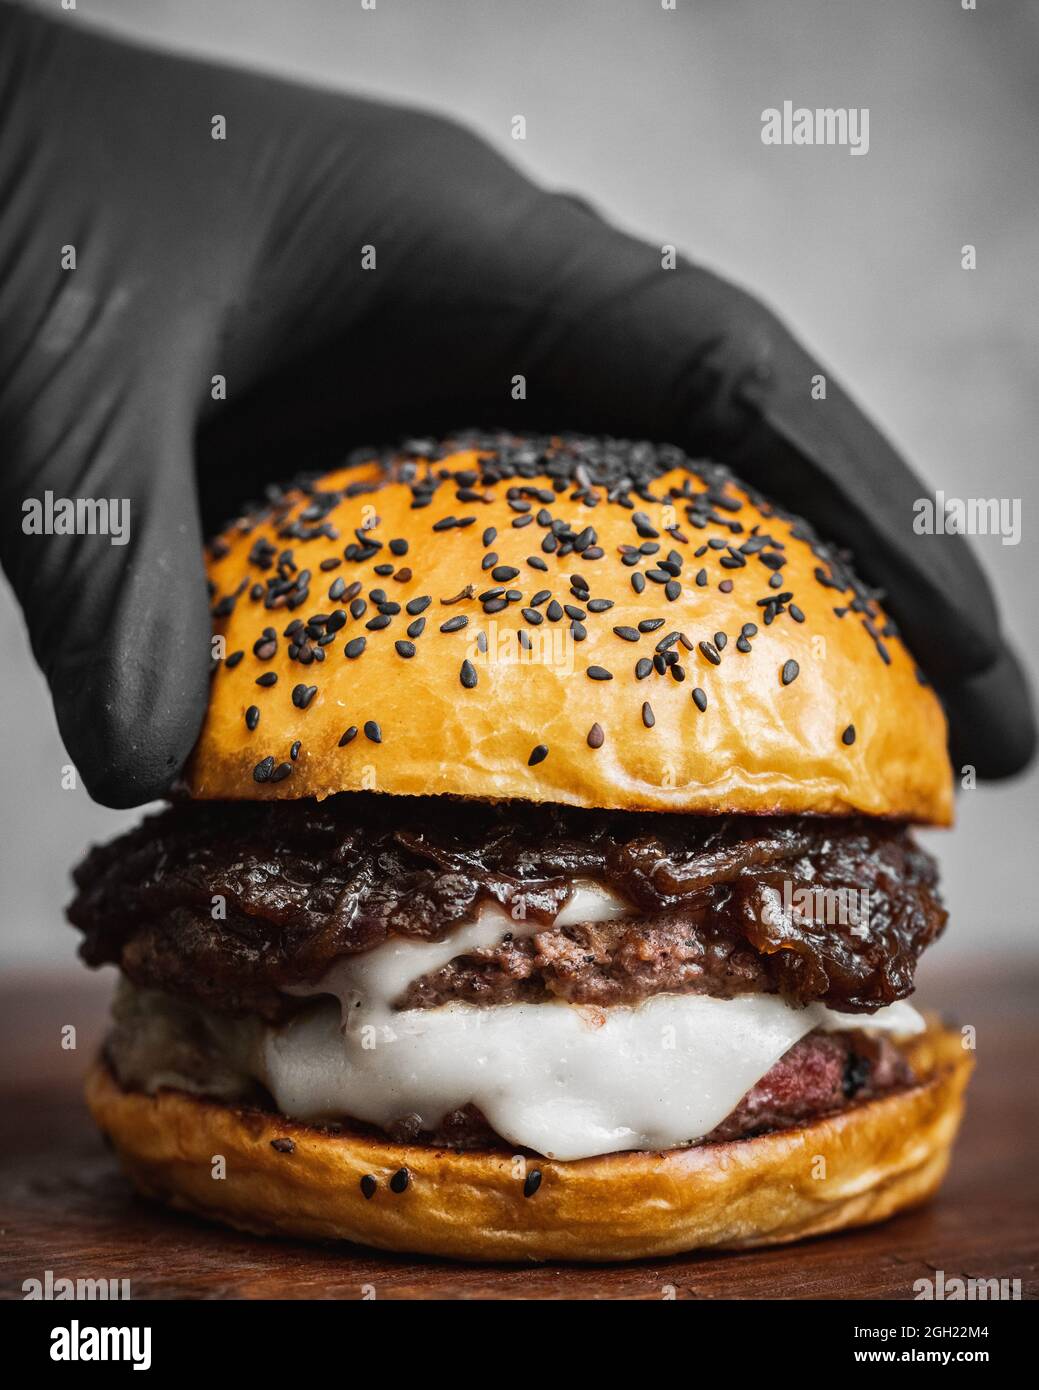 Gros plan d'un délicieux hamburger au bœuf et au fromage blanc fondu Banque D'Images